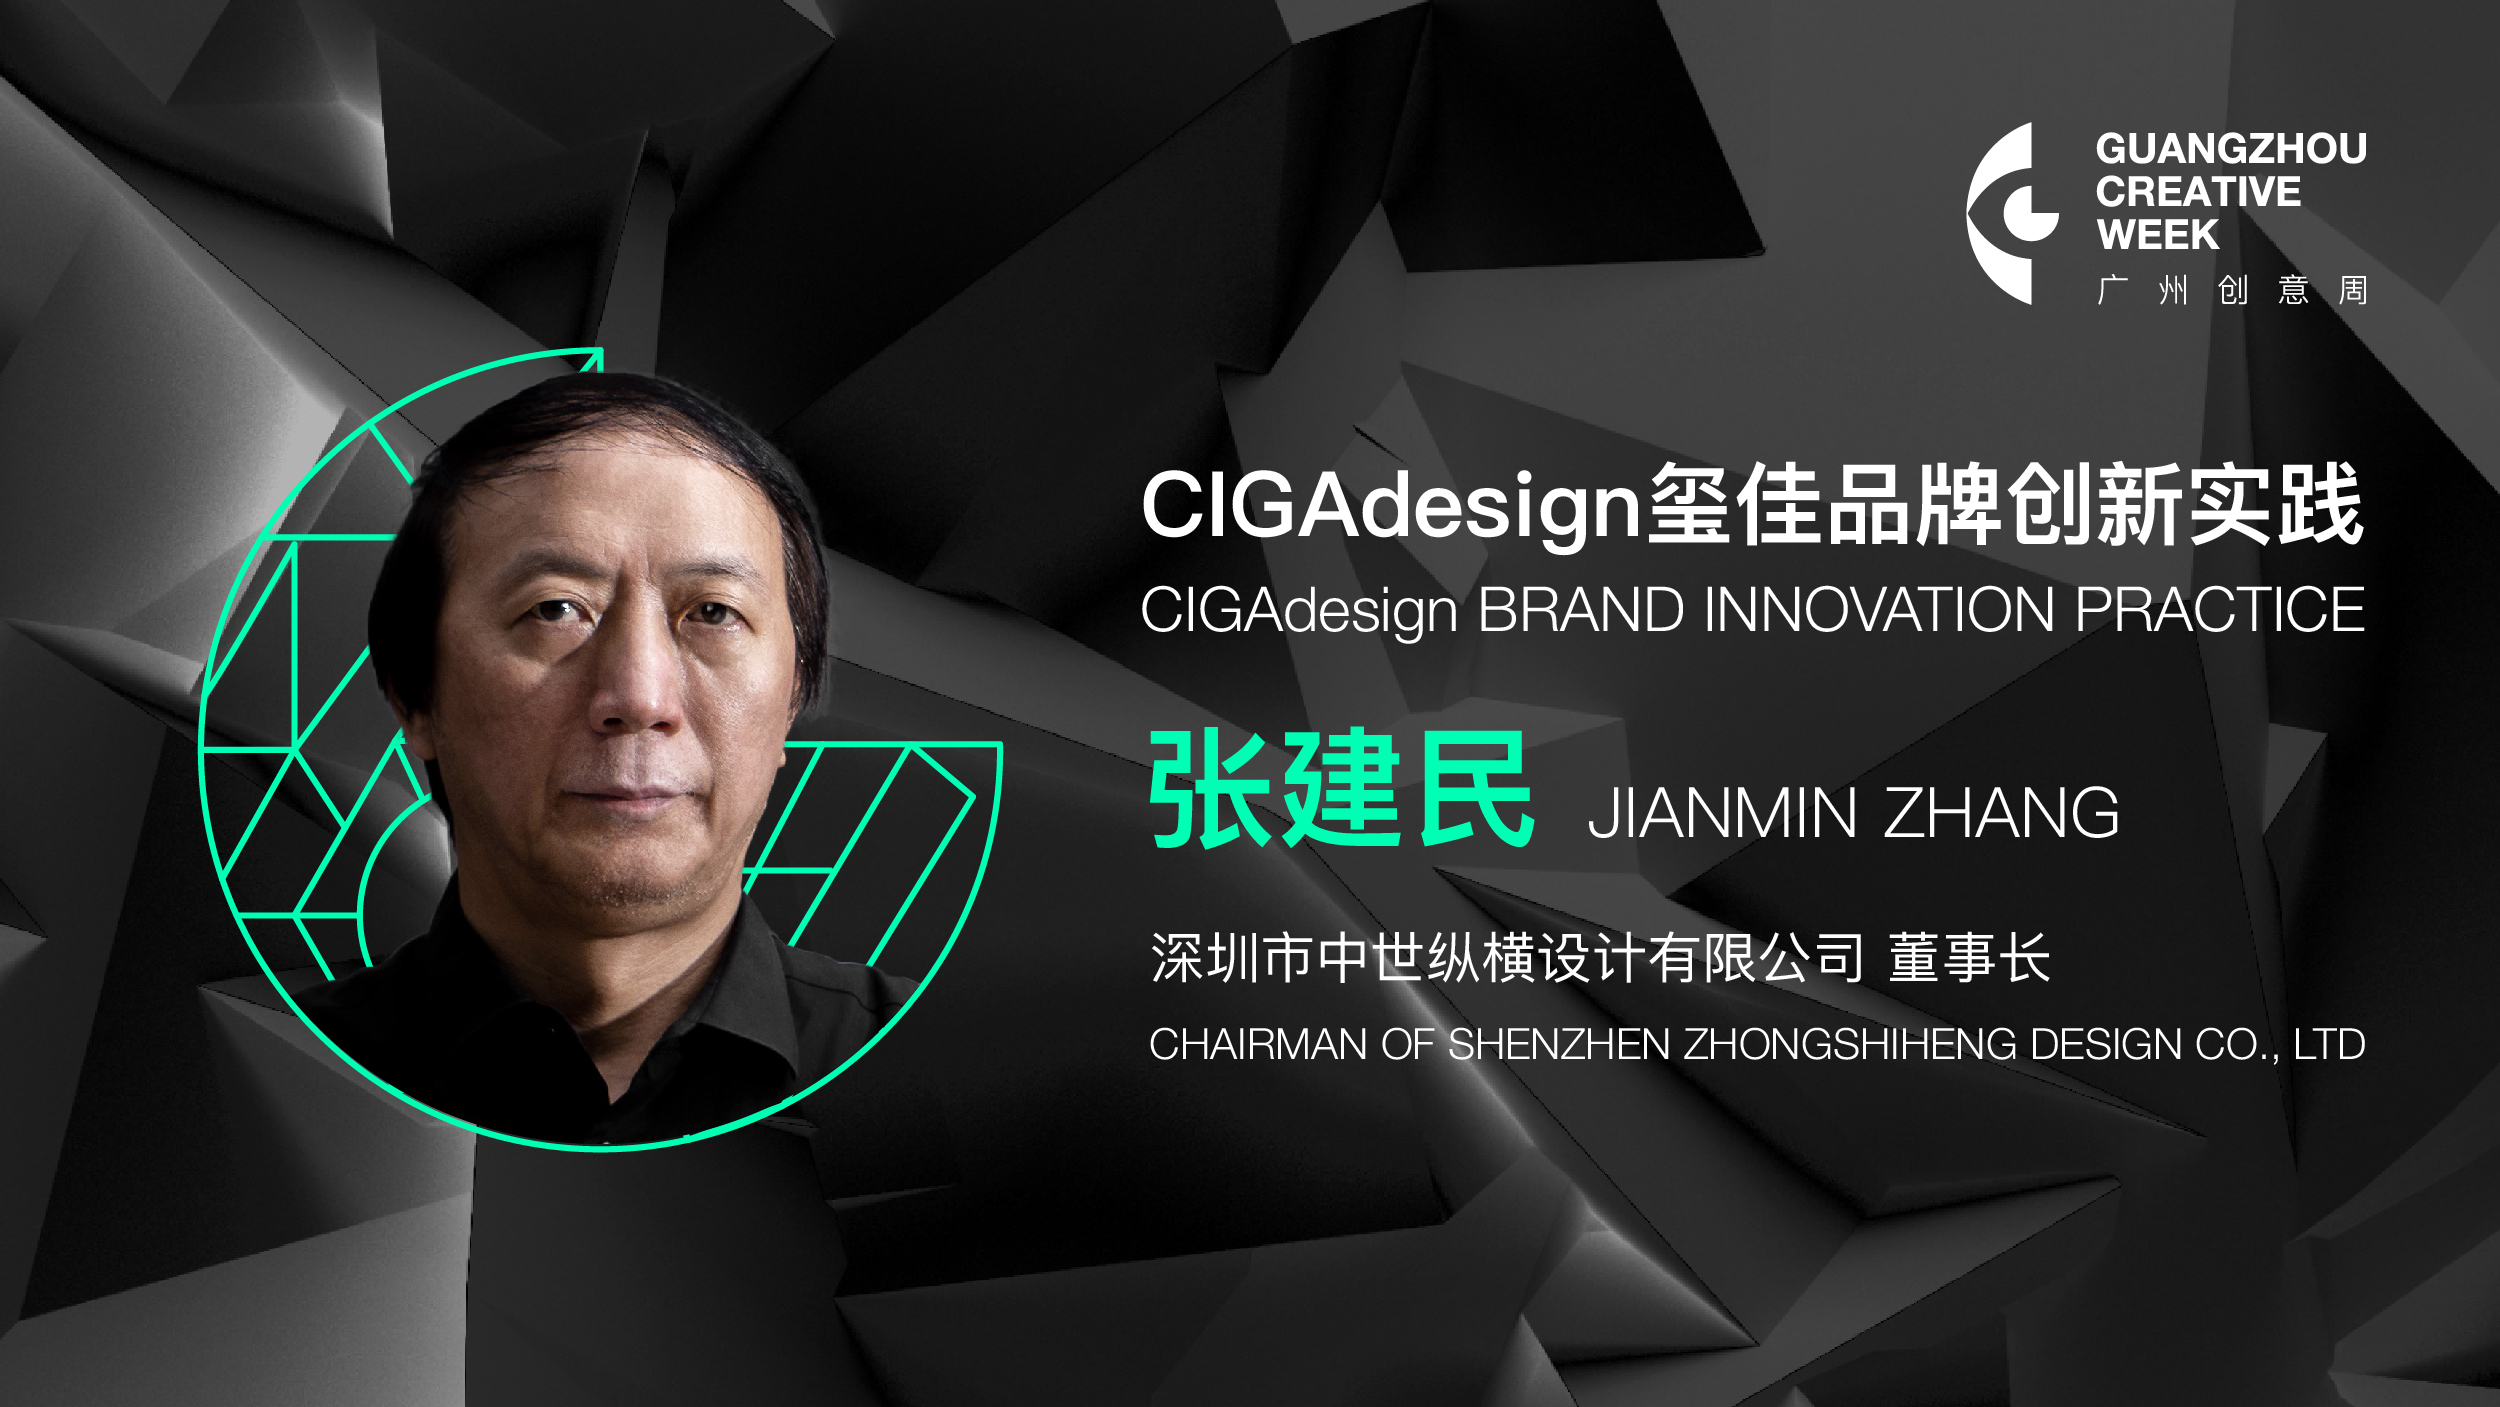 张建民：CIGA design 玺佳品牌创新实践